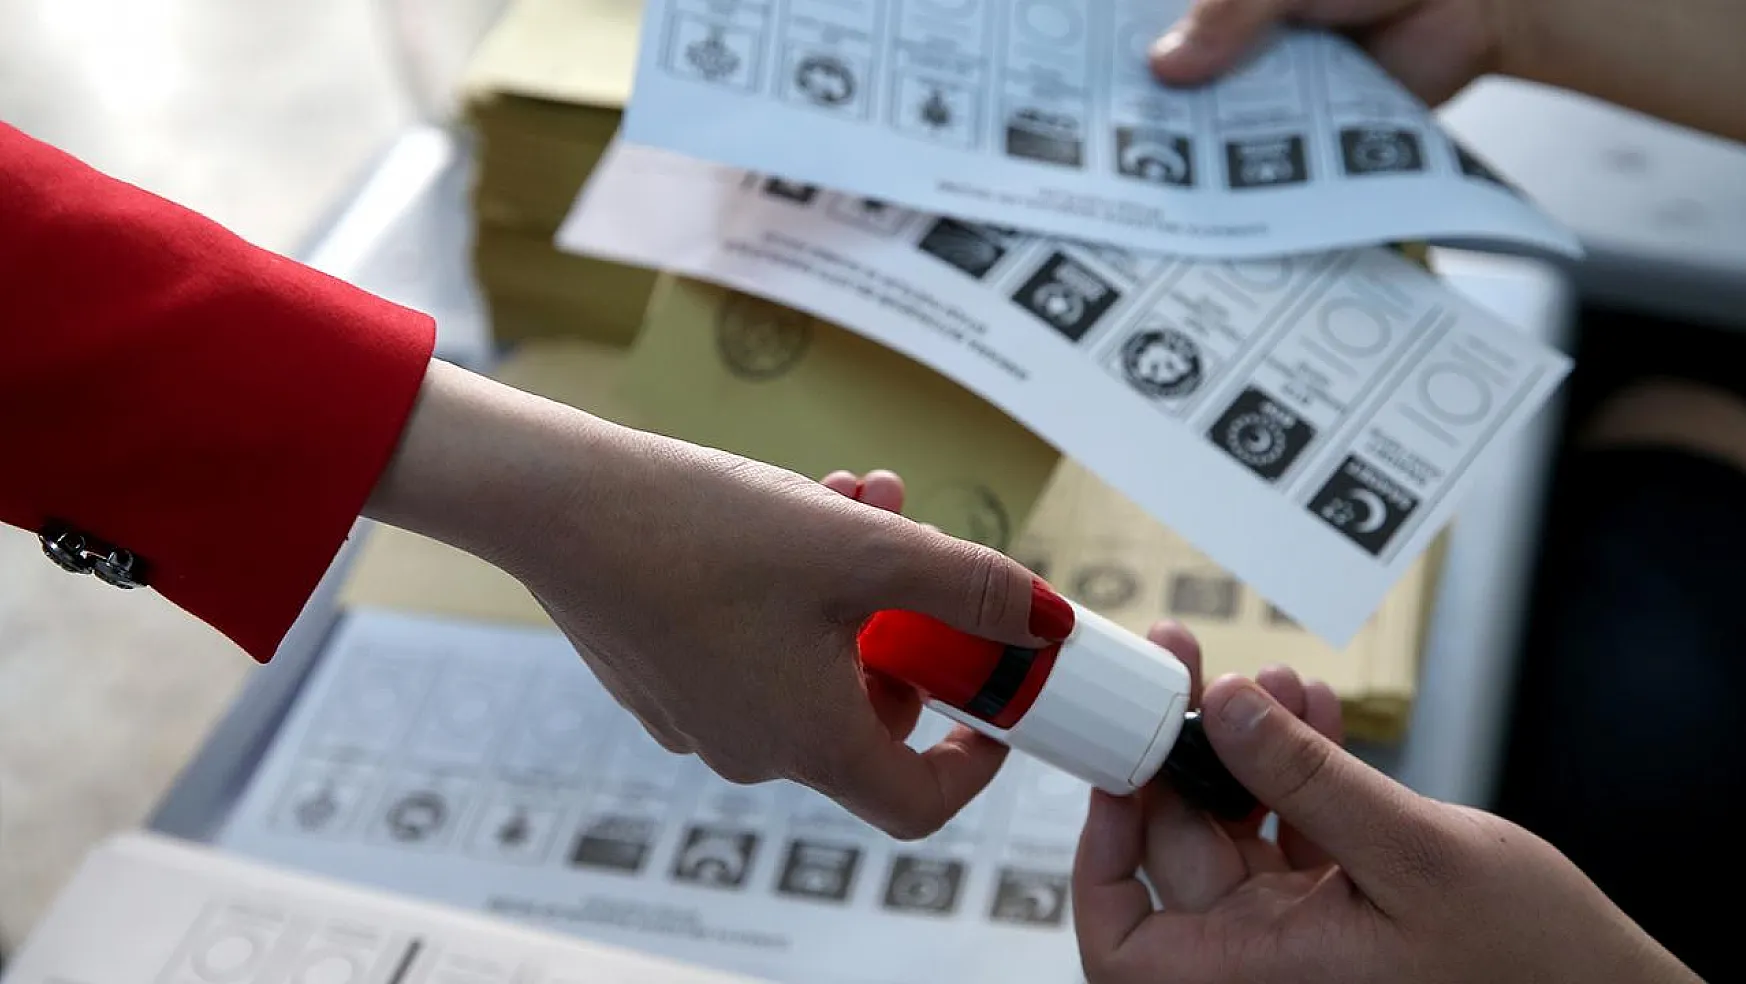 Oy Kullanacağı Sırada Kalp Krizi Geçirdi